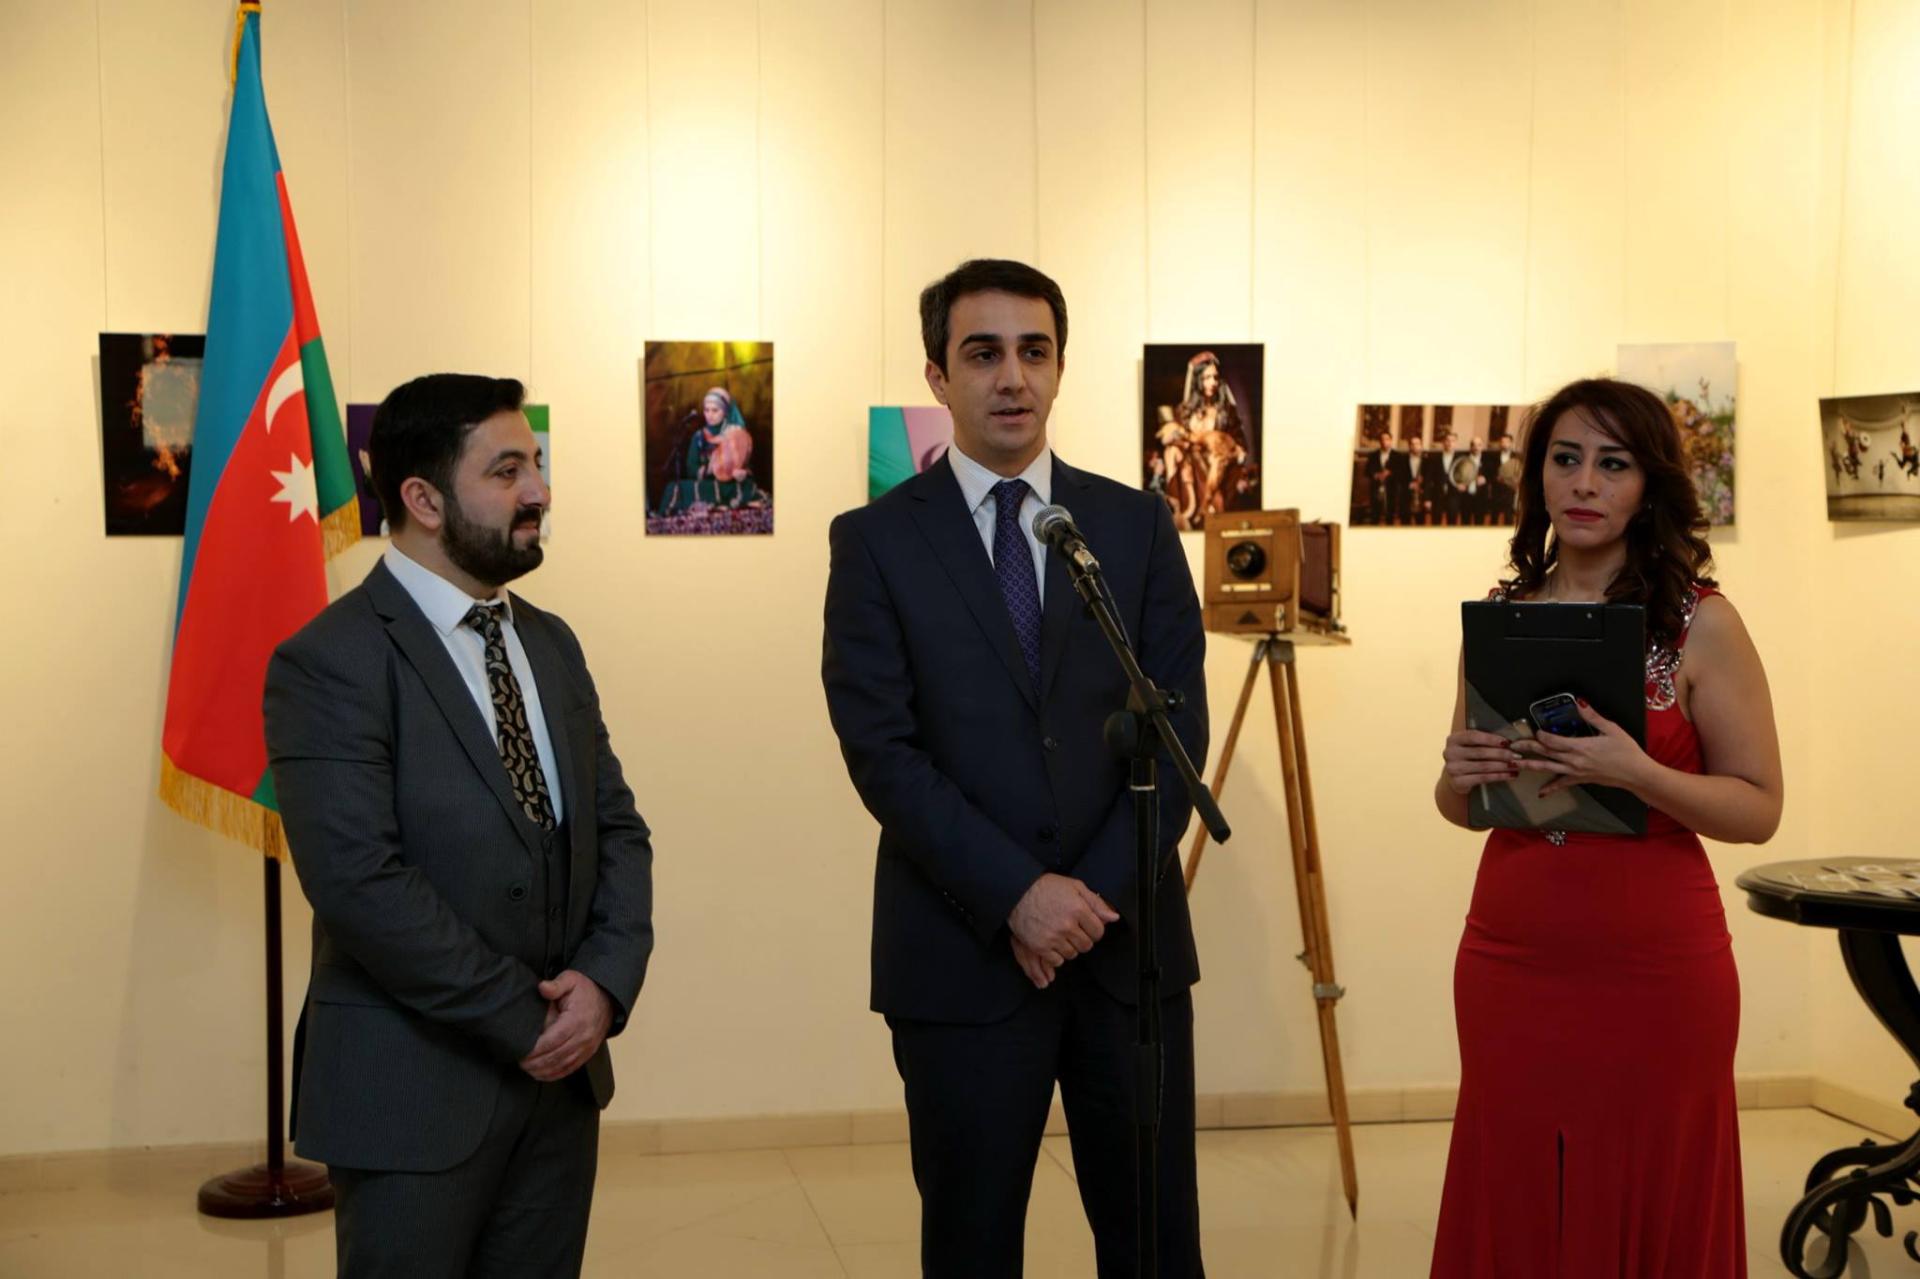 В Баку открылась фотовыставка Рустама Исмайлова "Любимый край - Азербайджан! " (ФОТО)